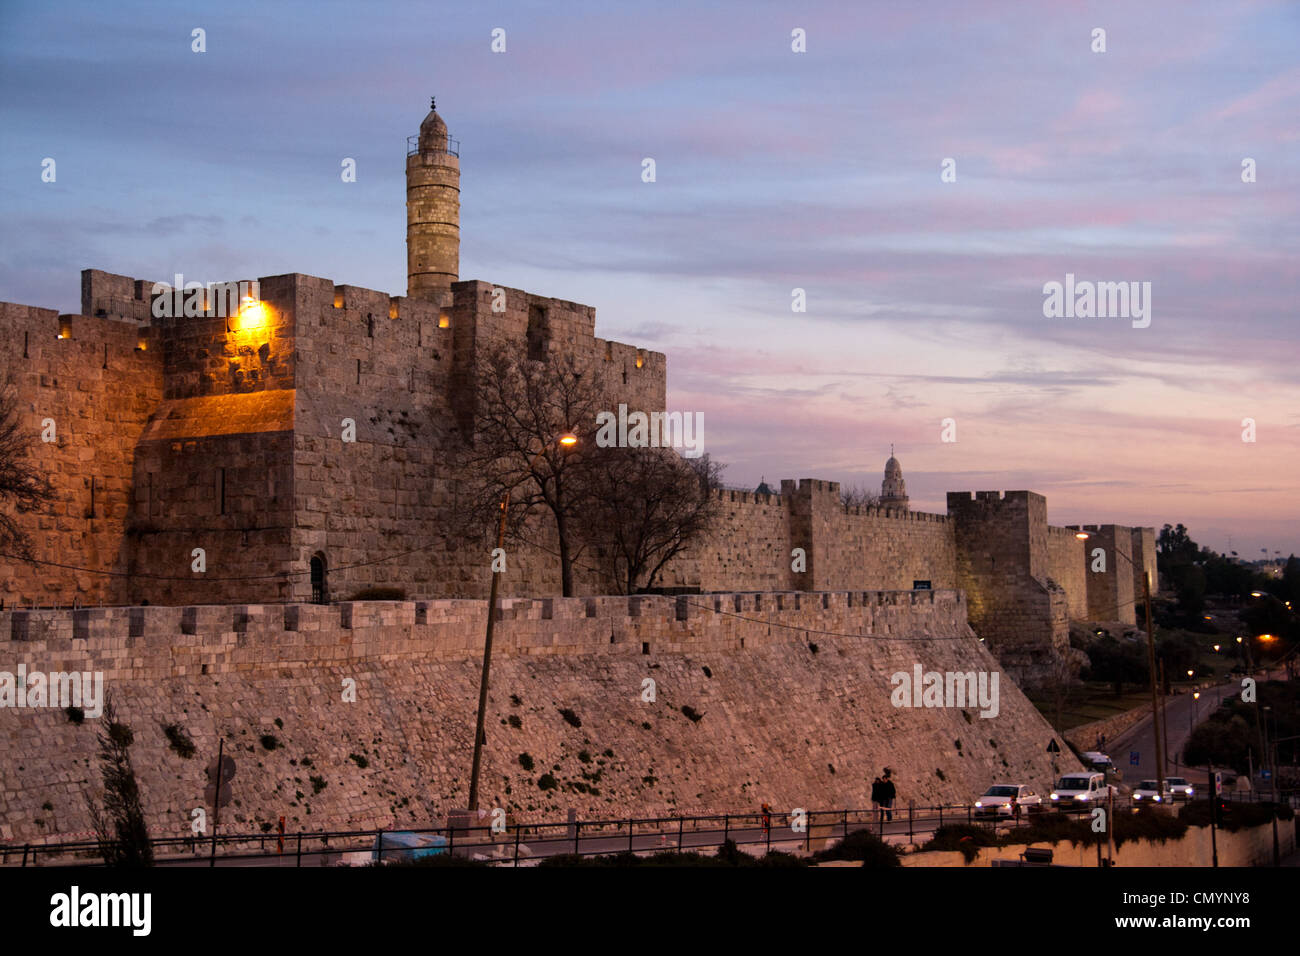 Turm Davids Zitadelle in der Altstadt von Jerusalem bei Sonnenuntergang. Stockfoto